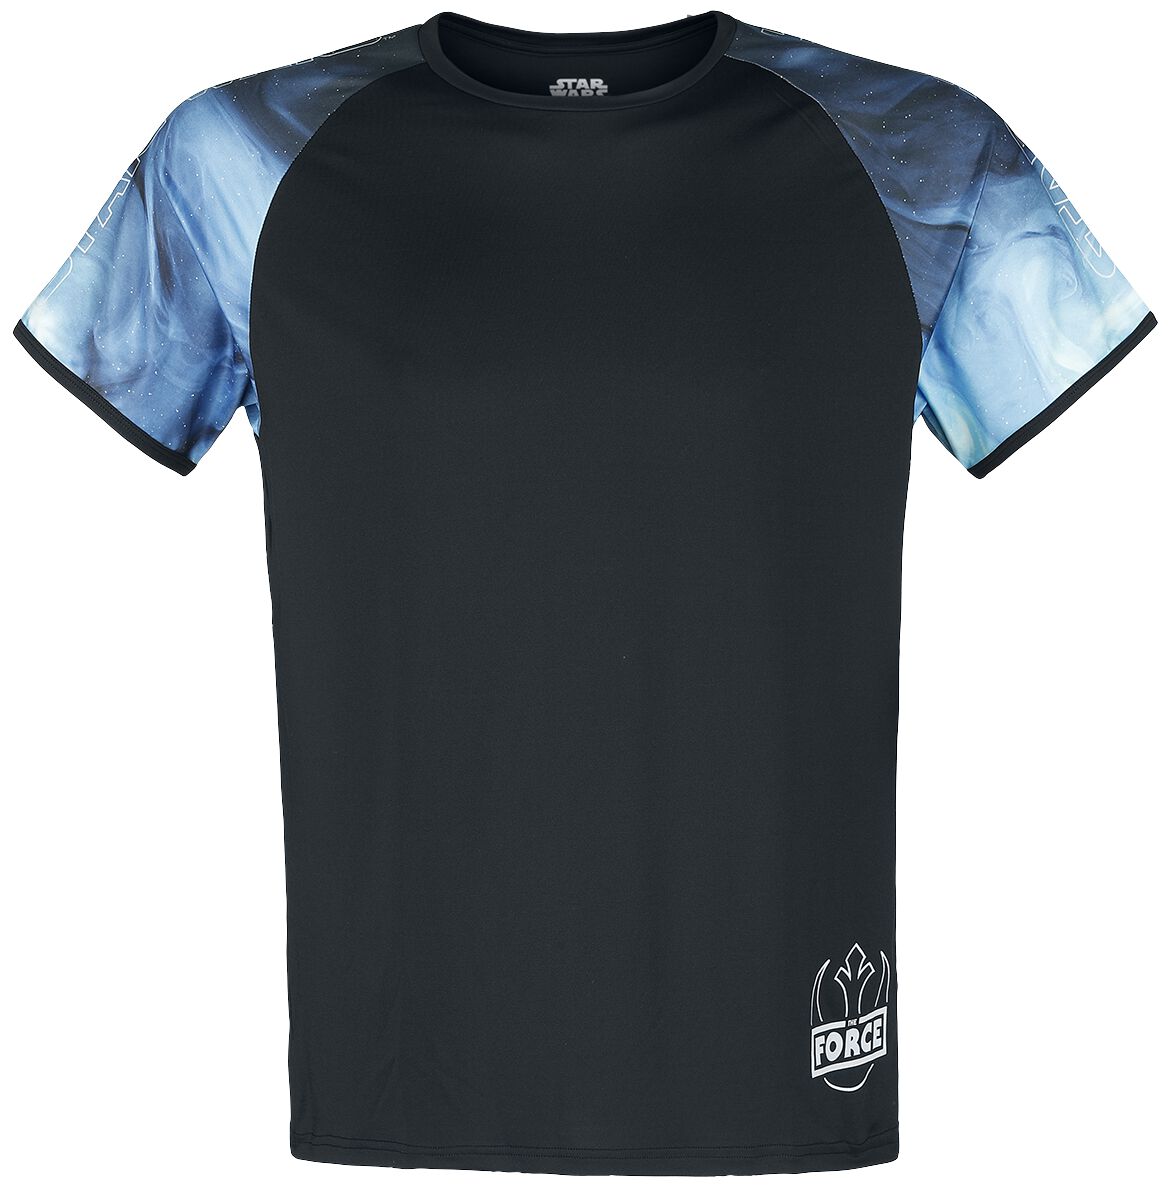 Star Wars T-Shirt - Galaxy - S bis M - für Männer - Größe S - allover  - EMP exklusives Merchandise!